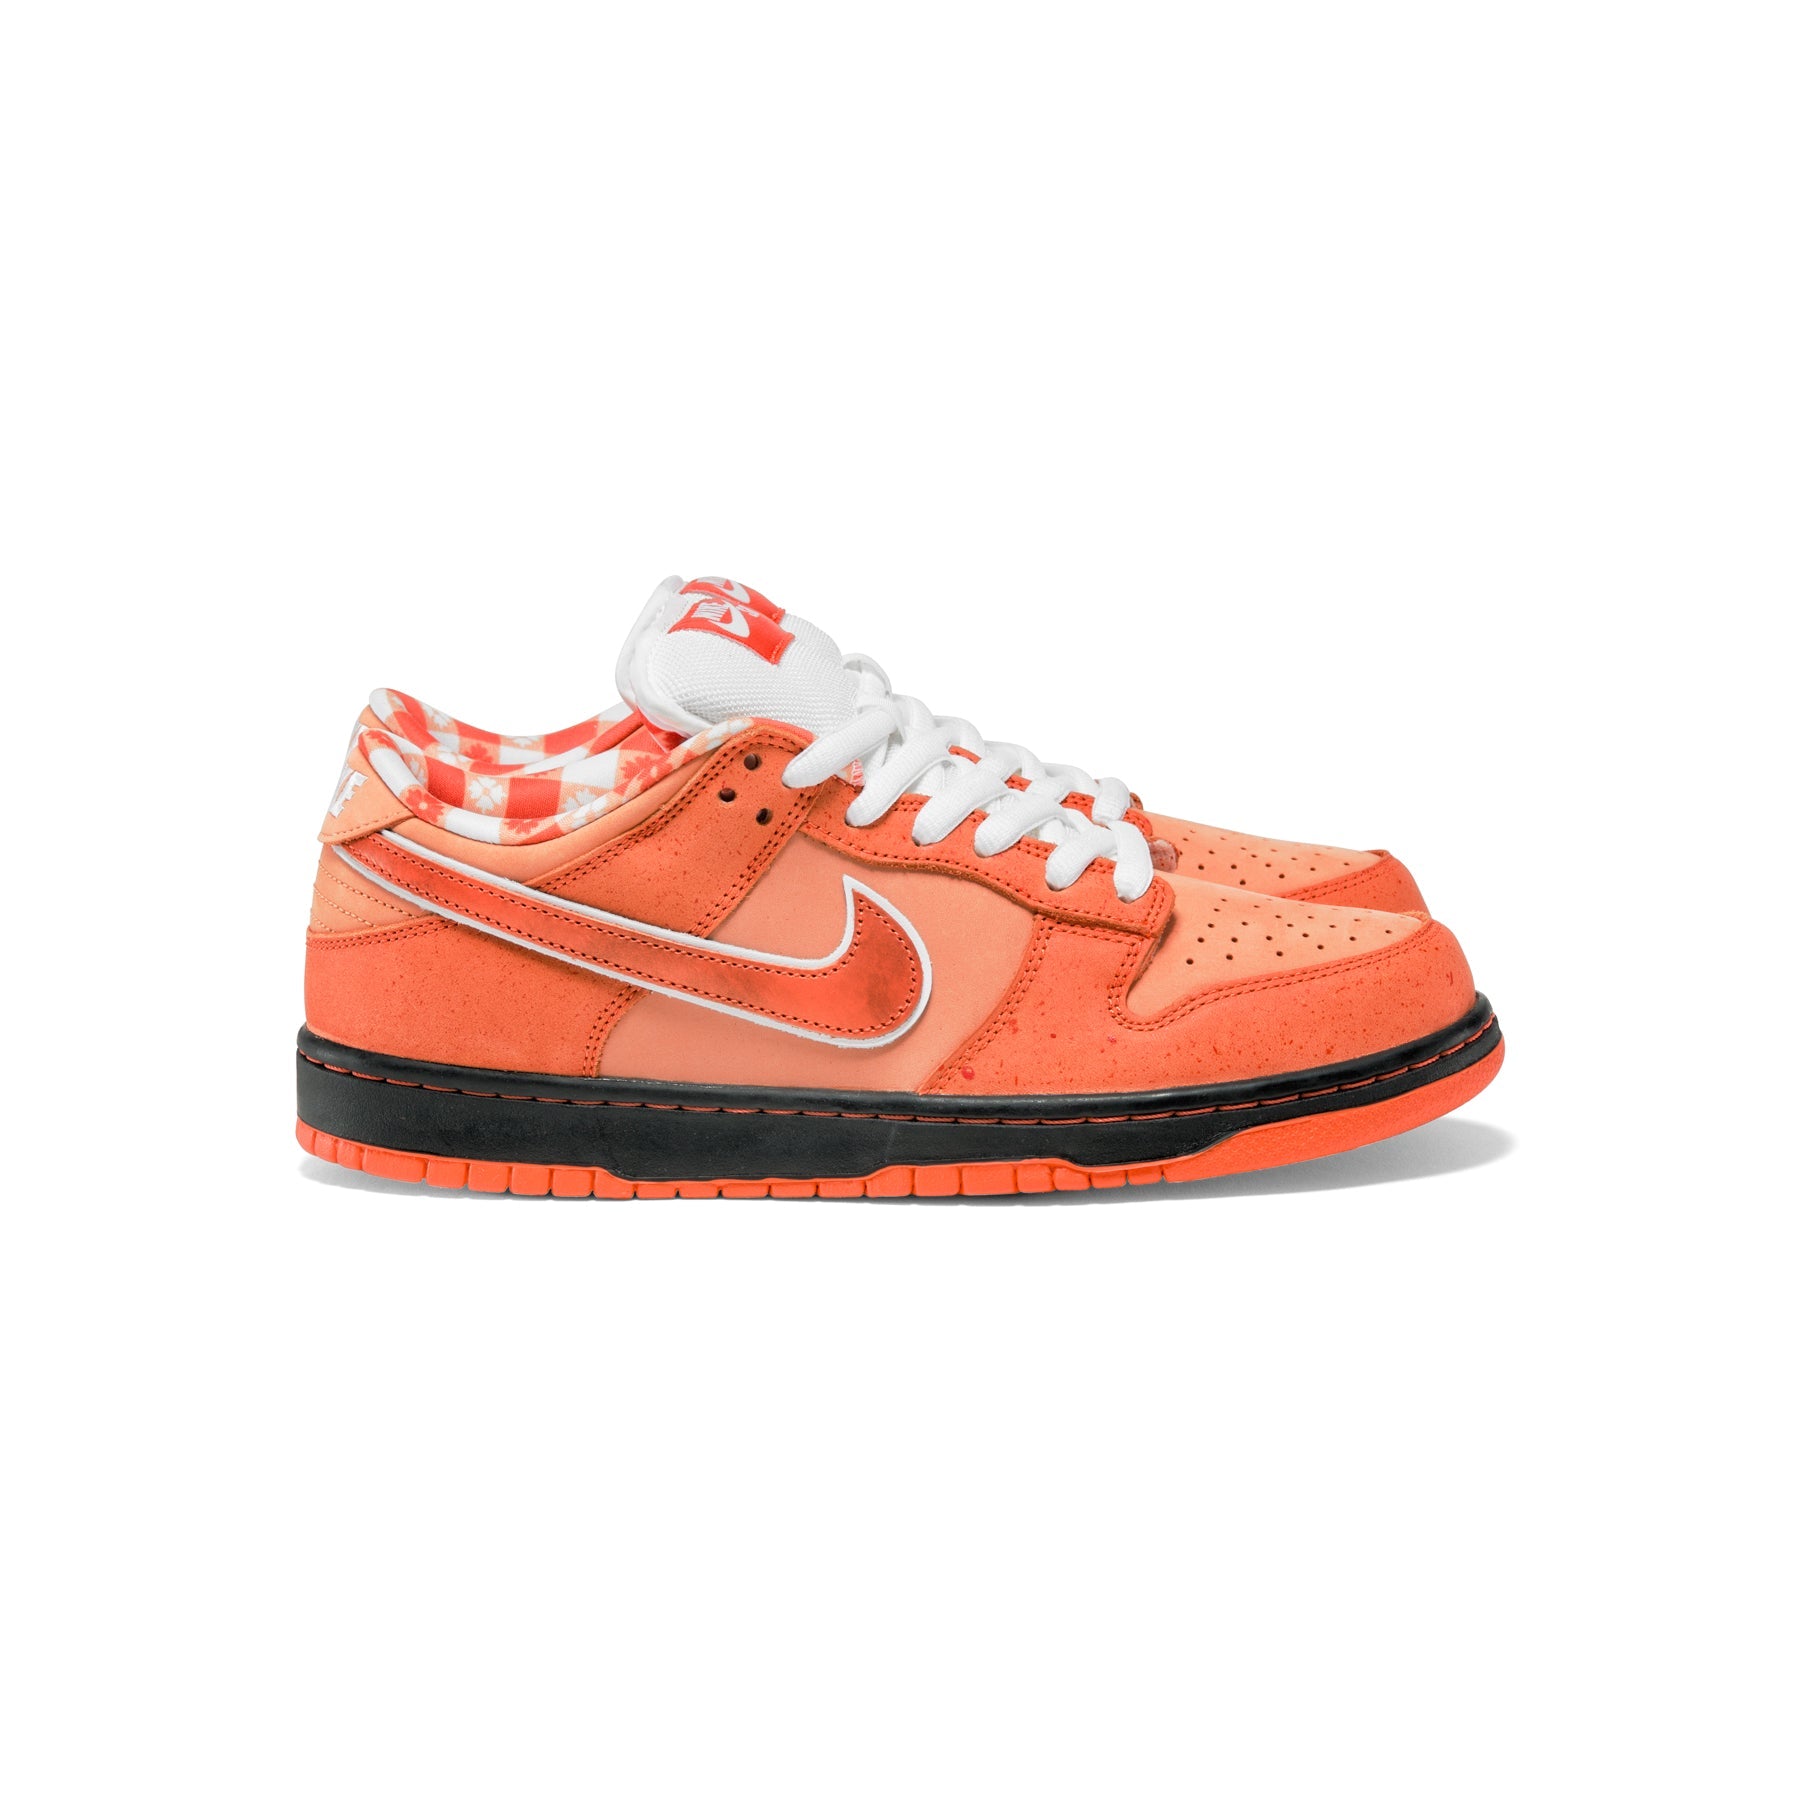 Concepts x Nike SB Dunk Low (Orange Frost/Electro Orange/White 